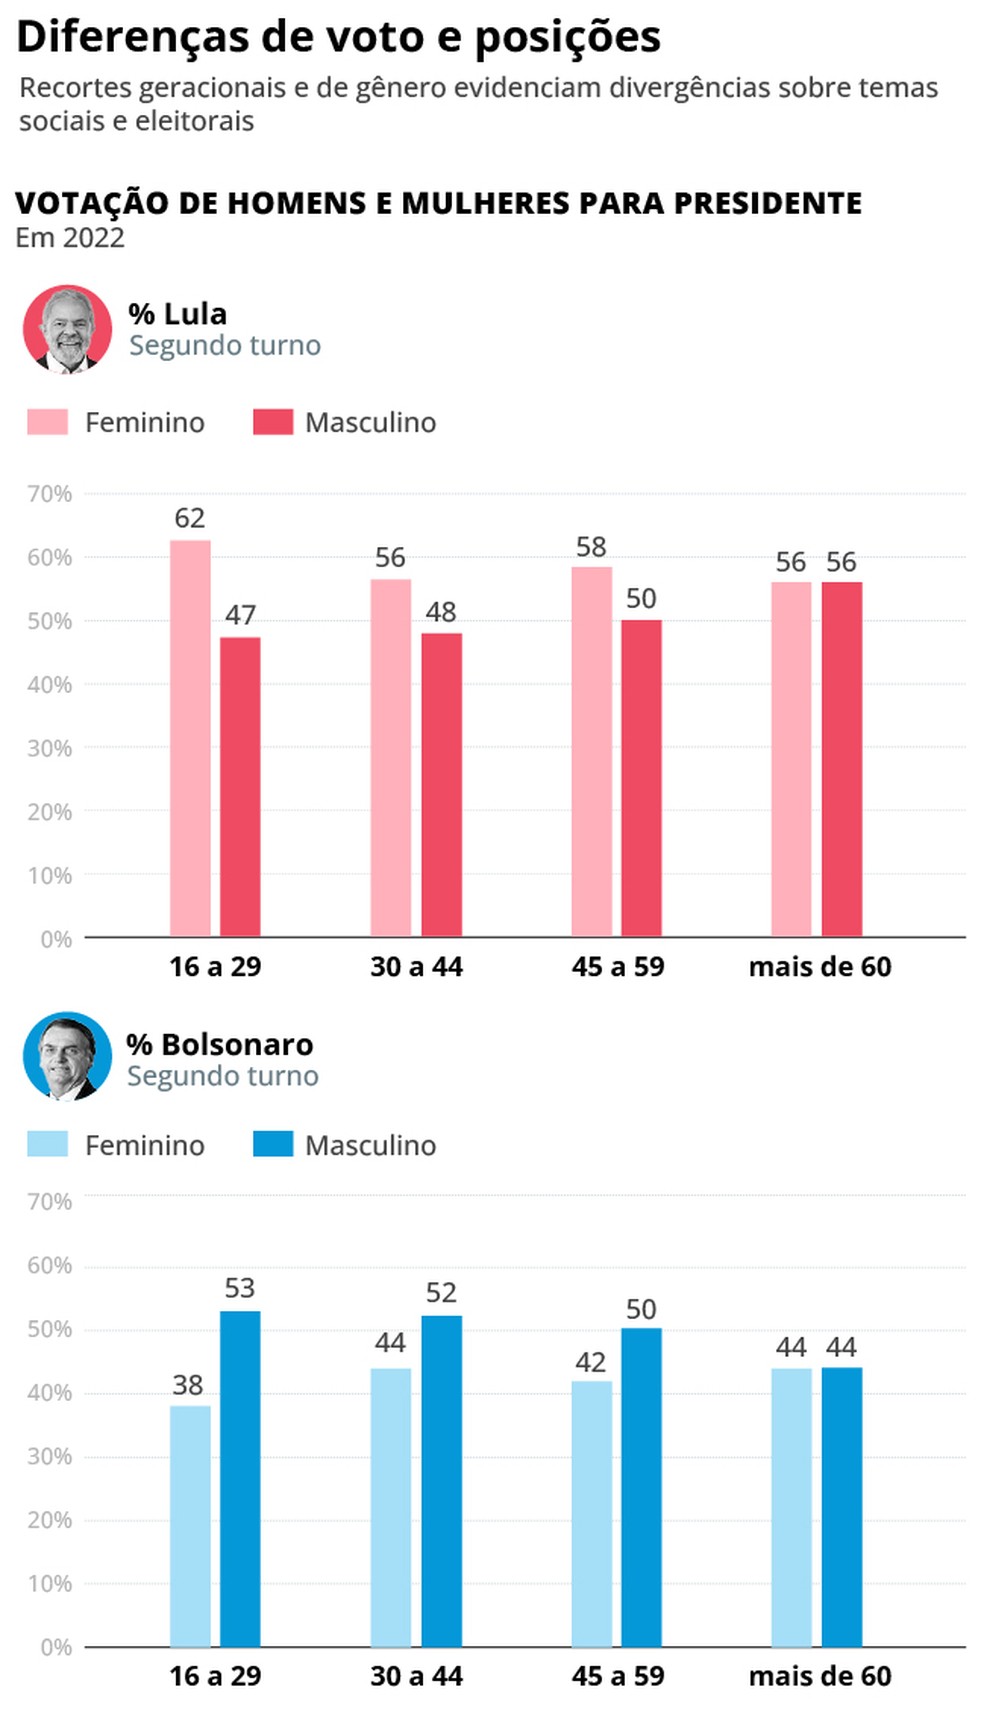 Diferença de votos e posições entre homens e mulheres — Foto: Editoria de arte